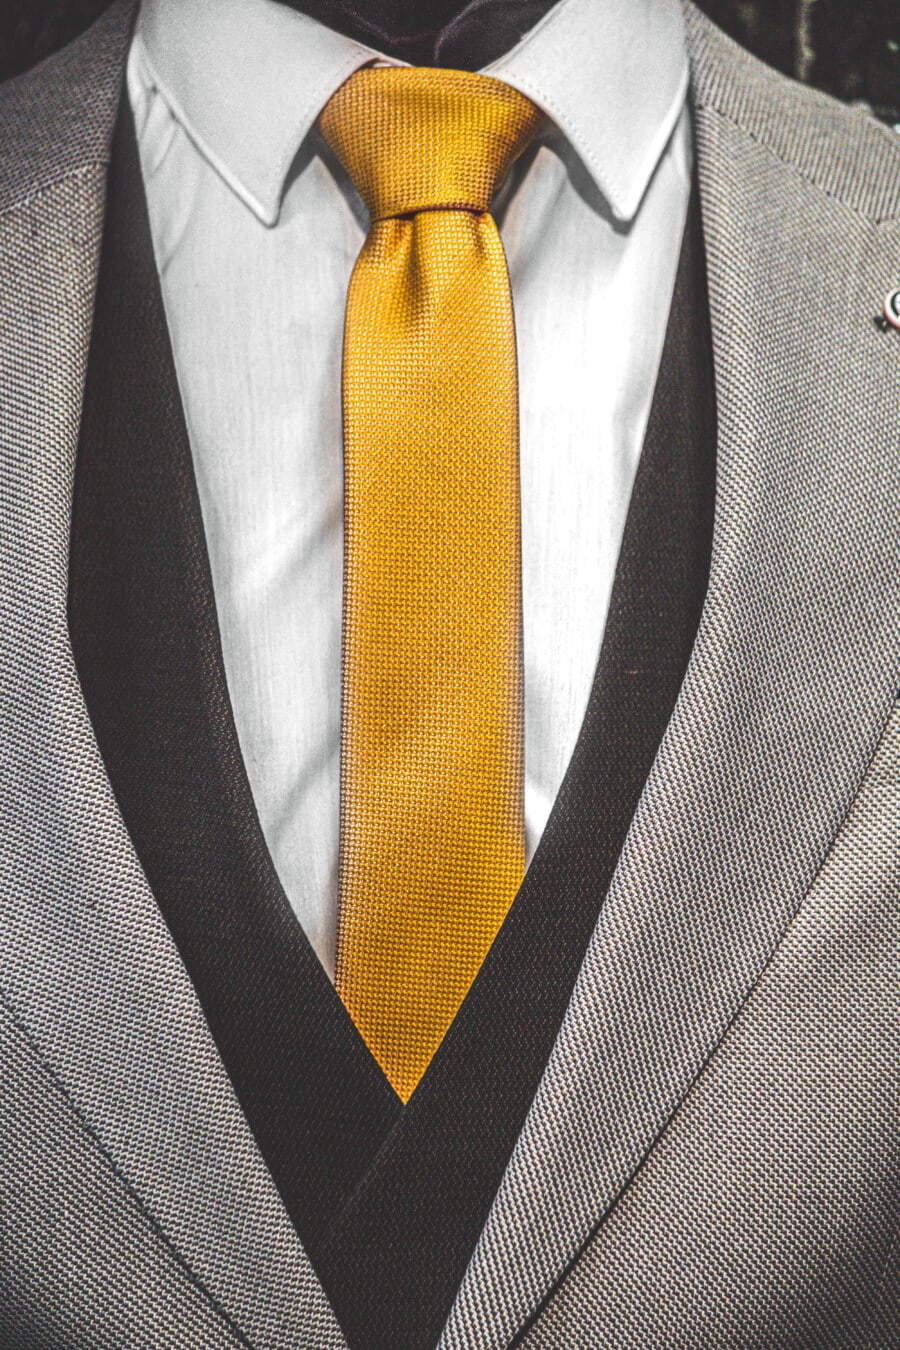 жълто, вратовръзка, костюм от смокинг, яке, Черно и бяло, текстилни, памук, дреха, бизнесмен, костюм